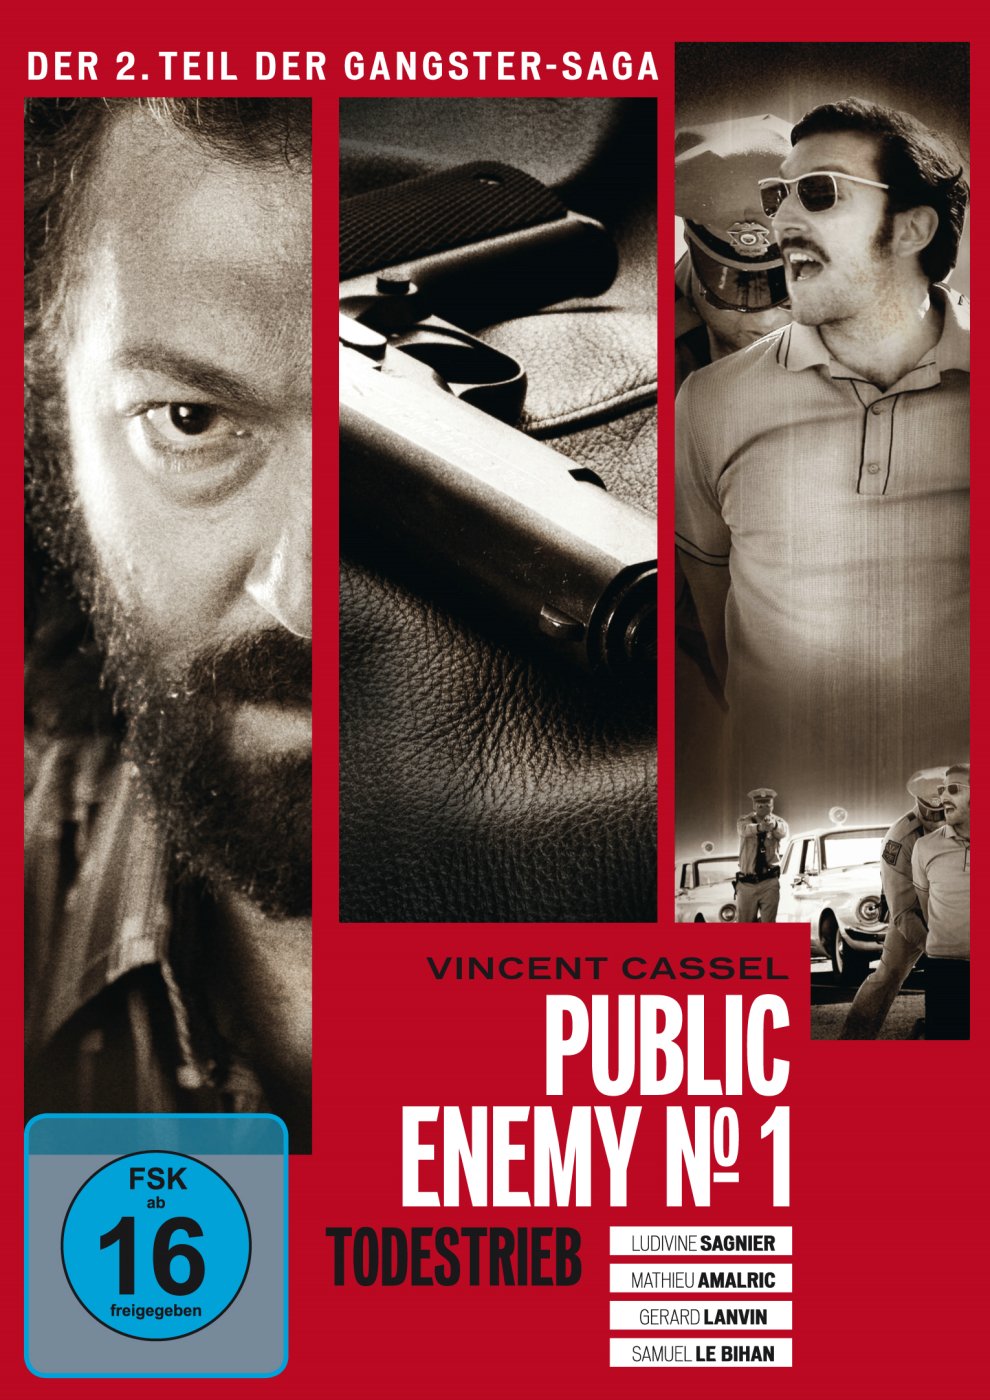 Public Enemy No. 1 Todestrieb